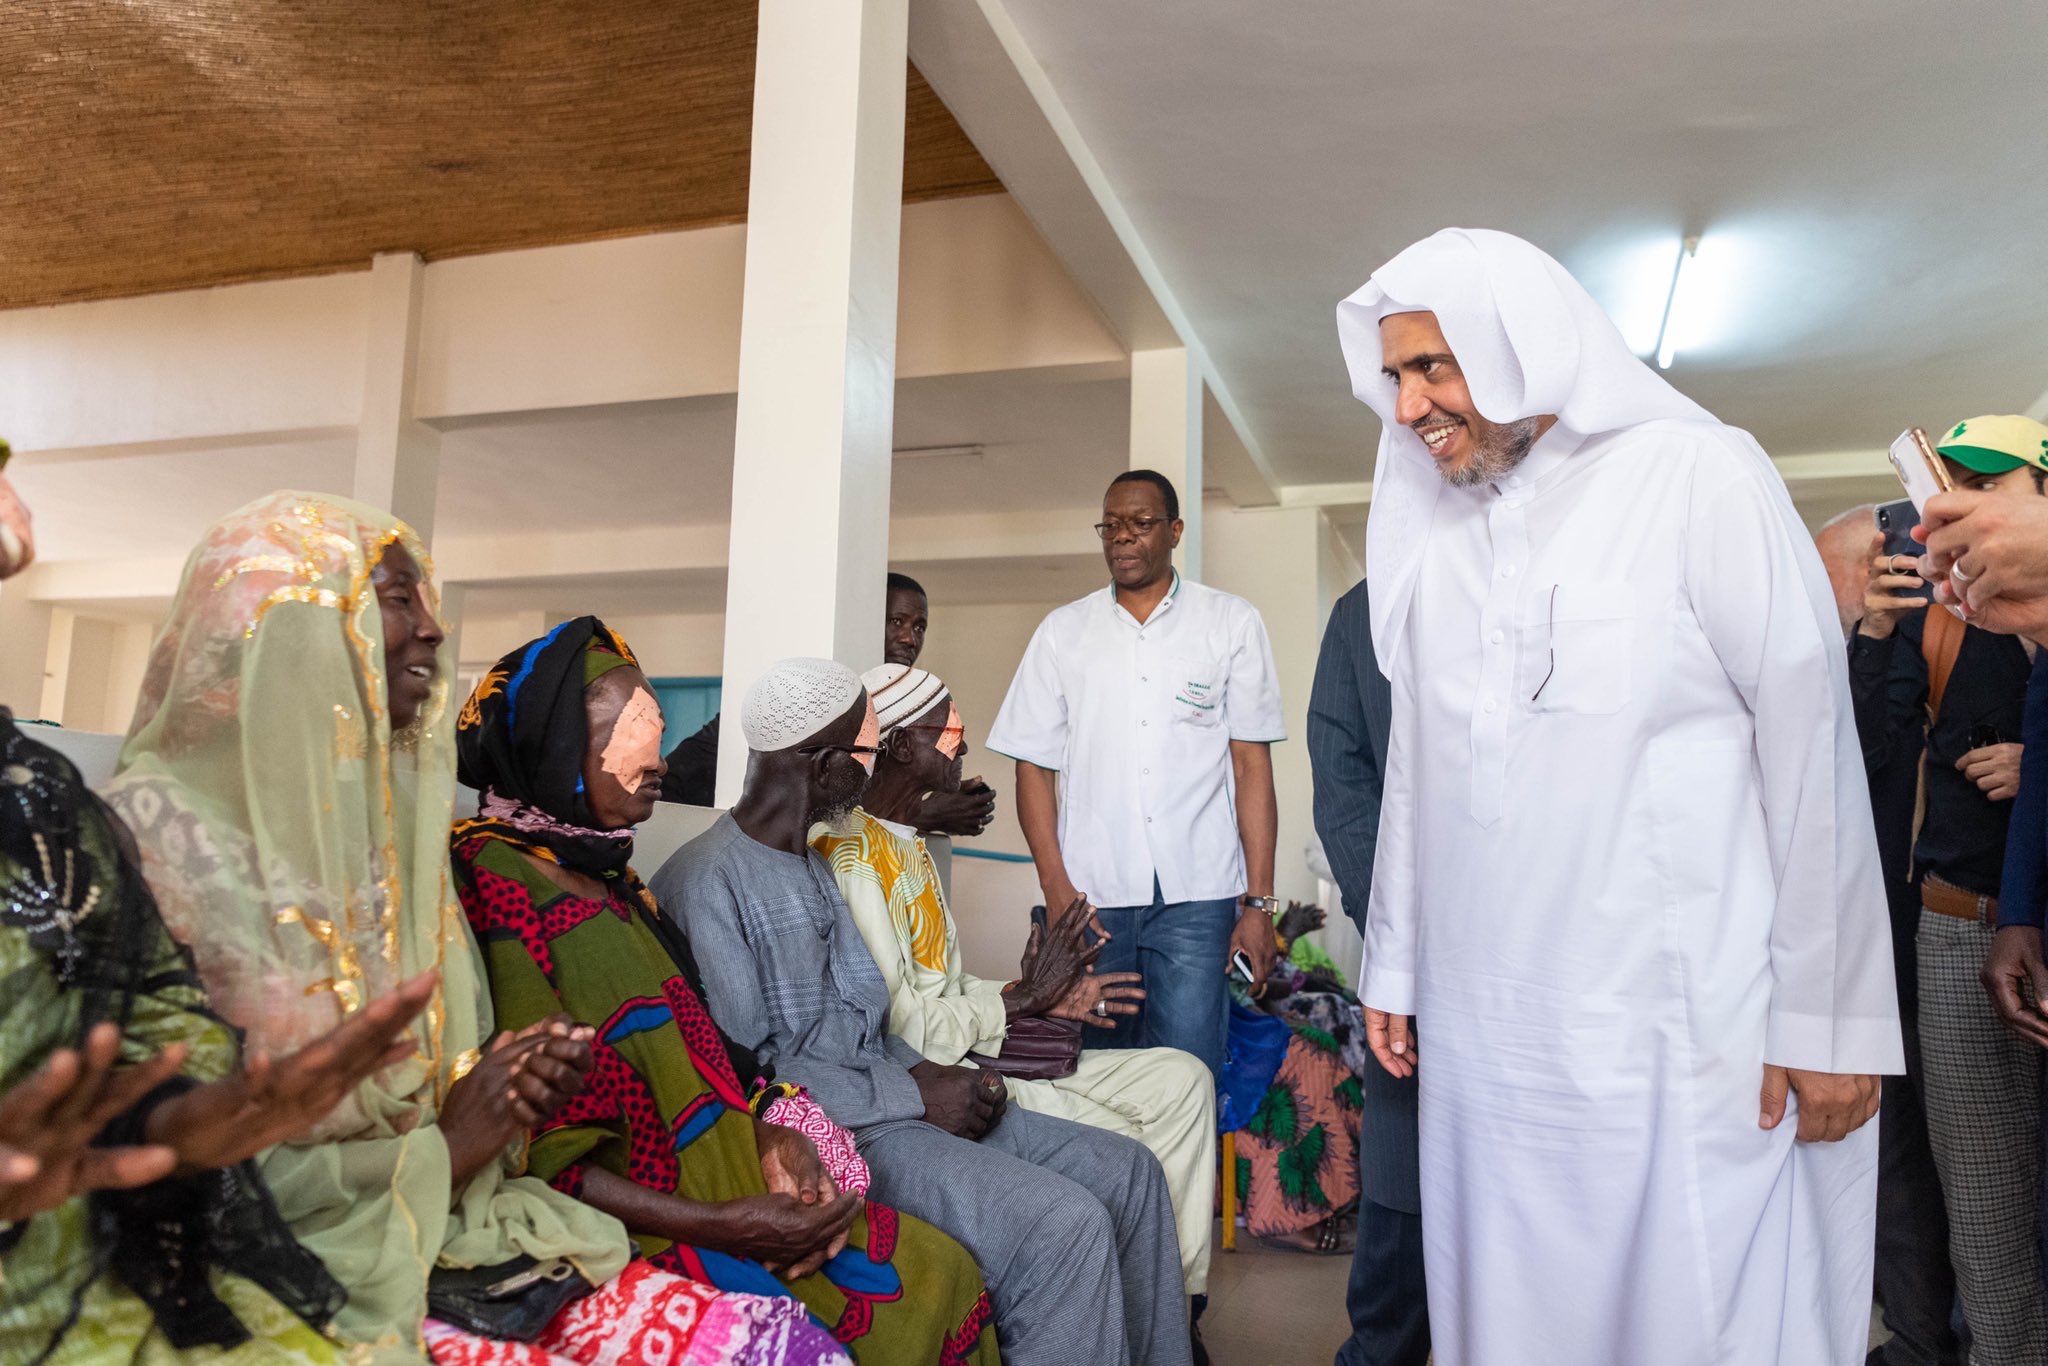 Le D.Mohammad Alissa inaugure une campagne d’aide médicale de lutte contre la cécité en Afrique en s’assurant du bon déroulement des opérations.